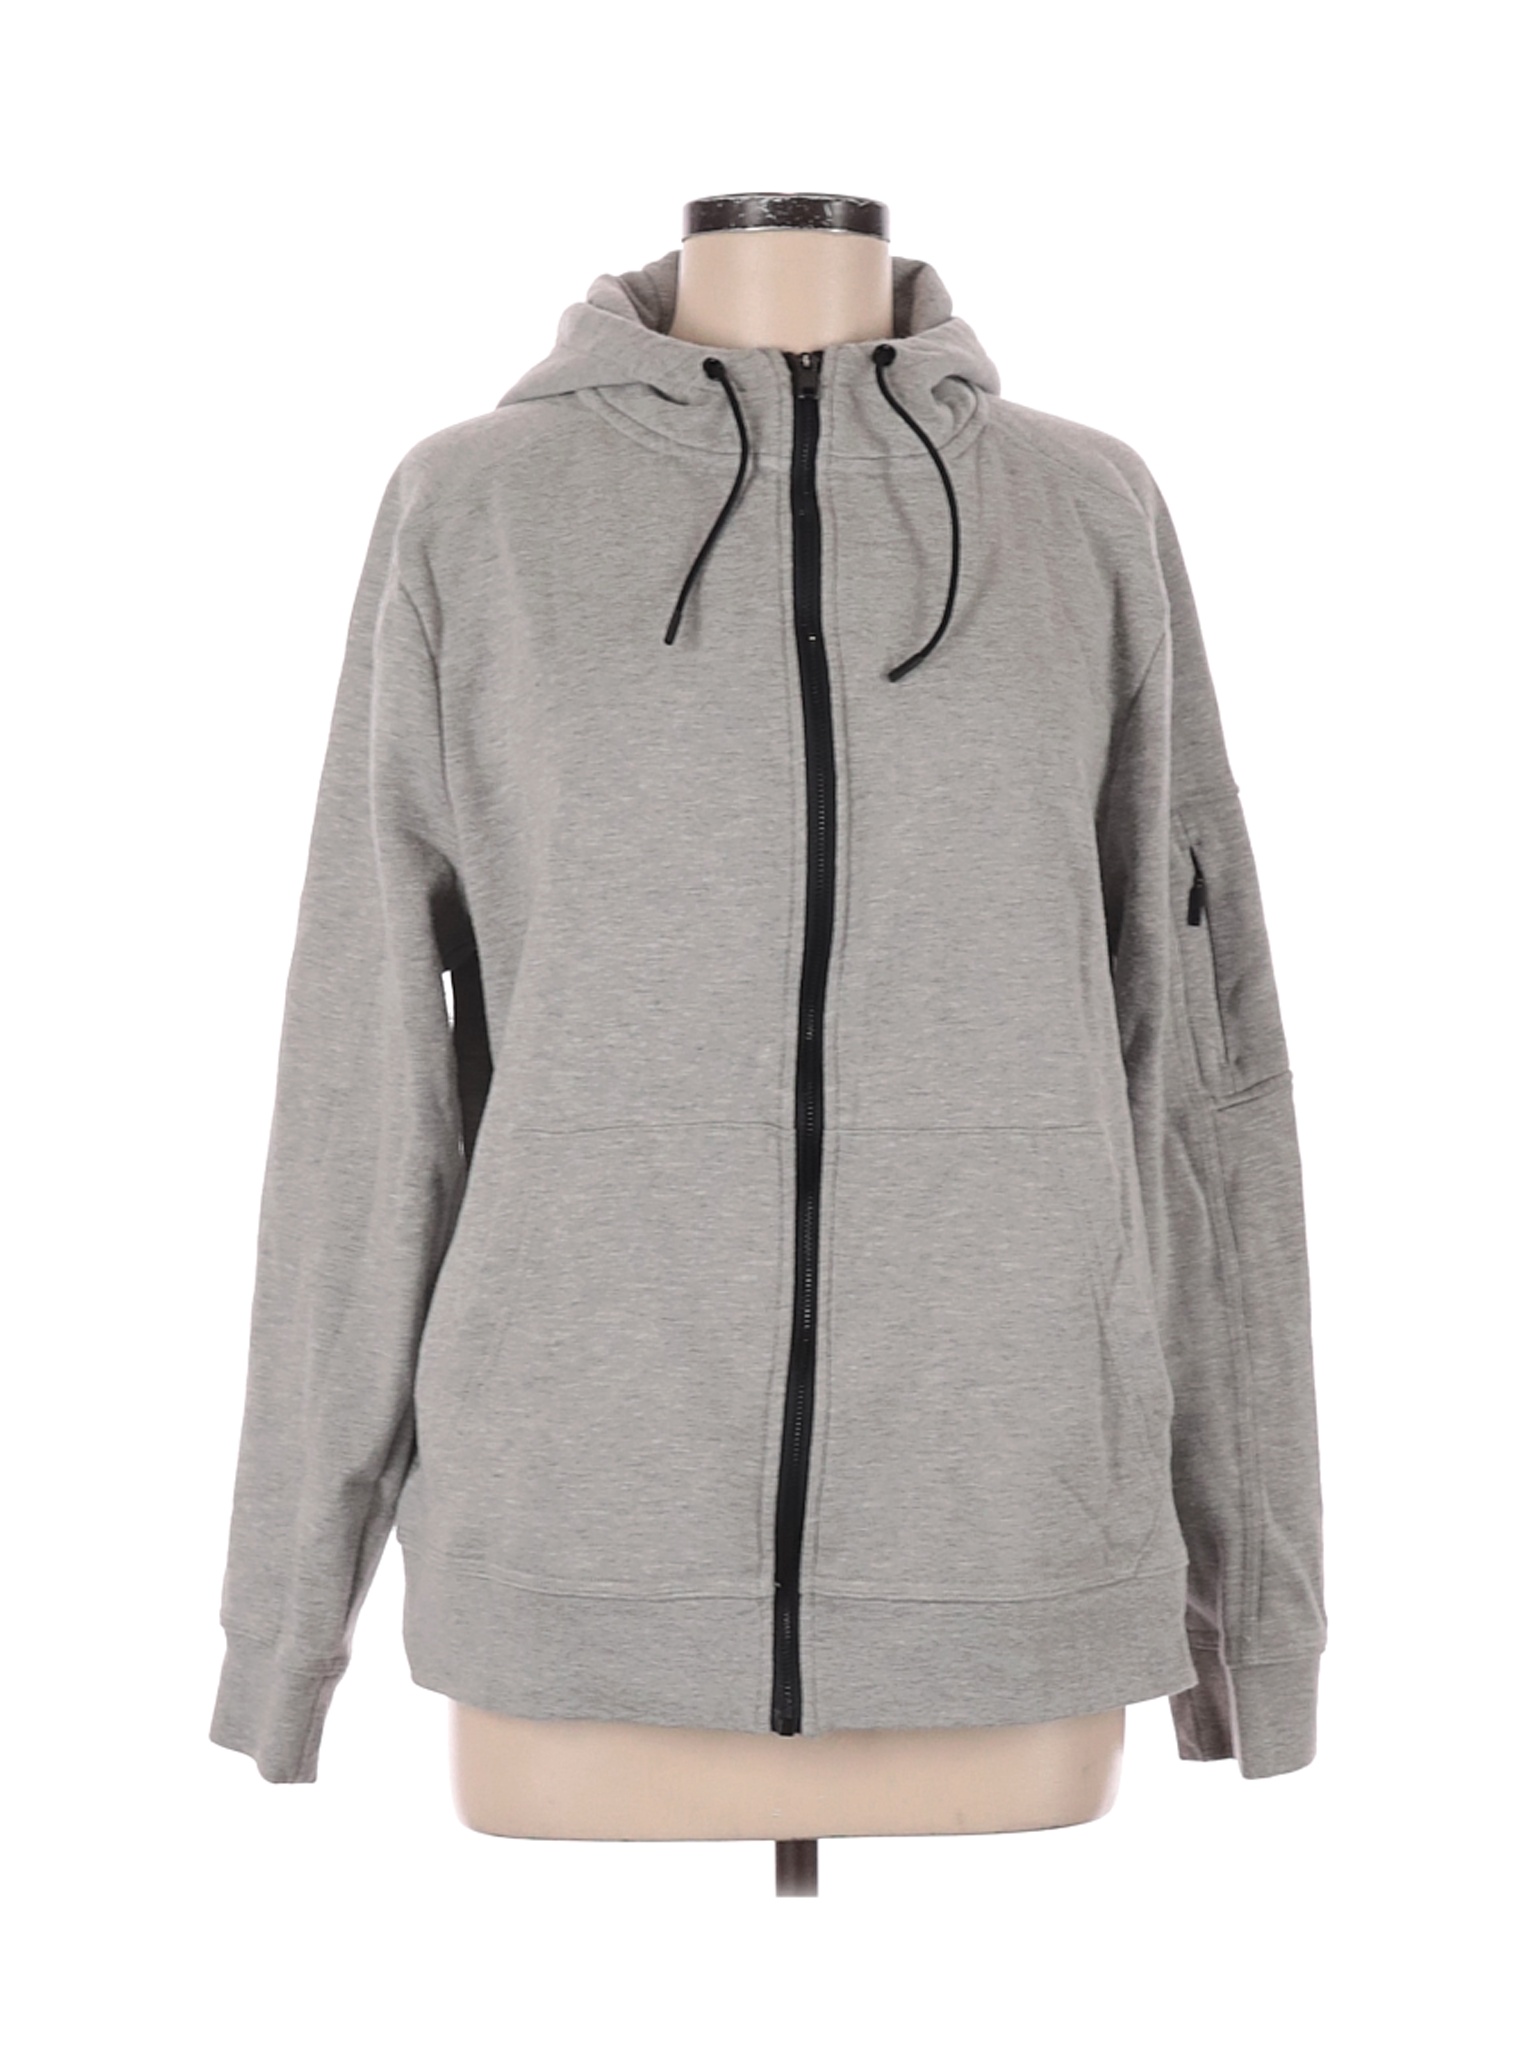 Assorted Brands Women Gray Zip Up Hoodie M | eBay